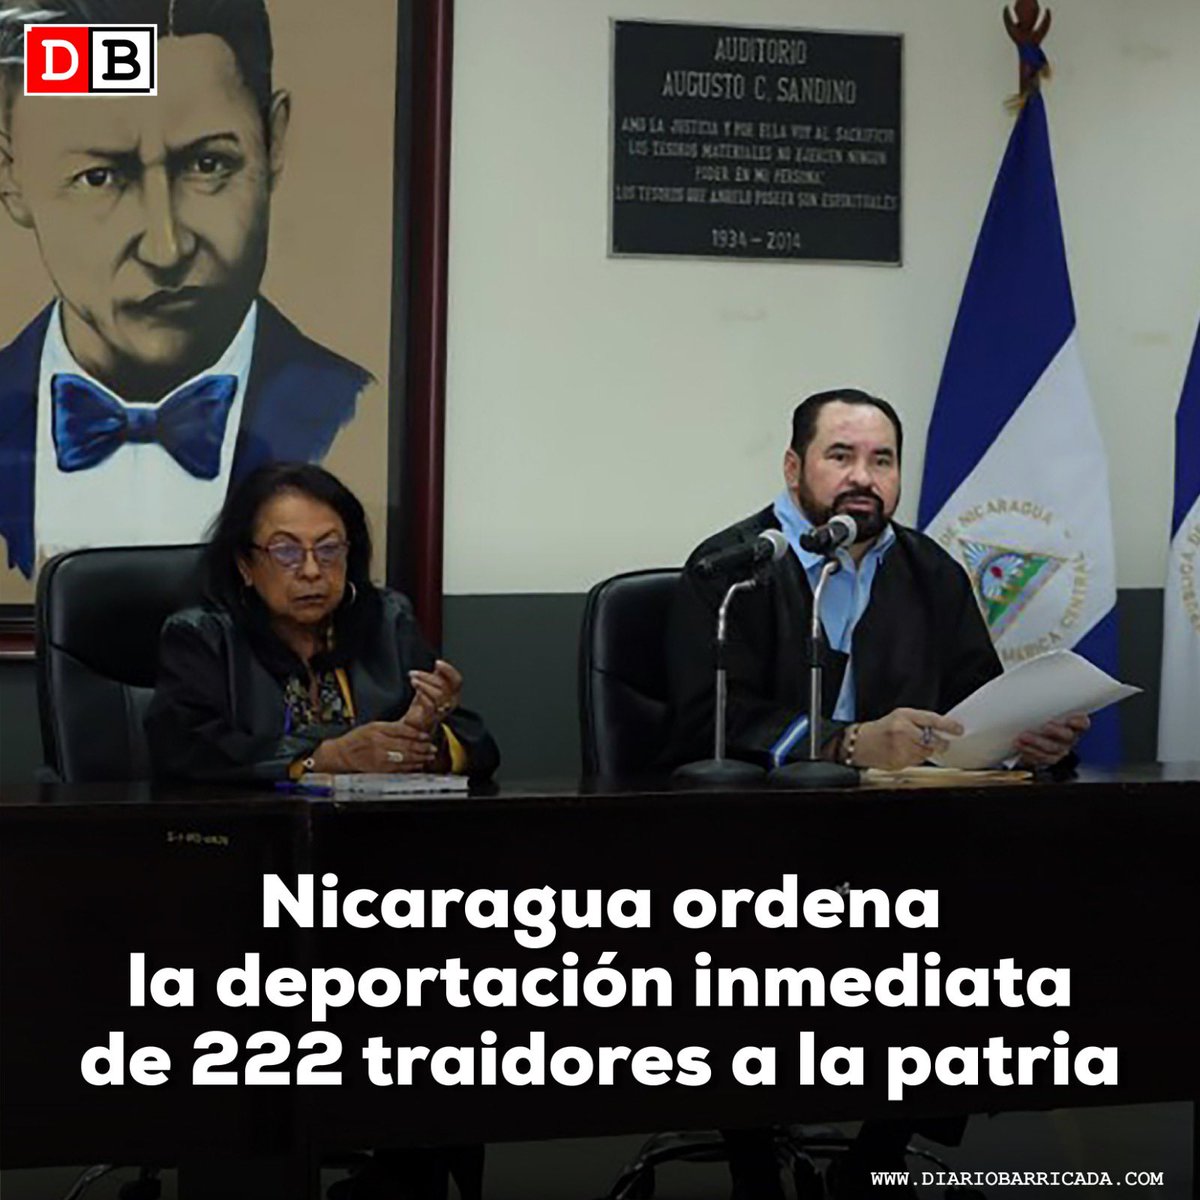 Causaron daños económicos a nuestra nación, impulsaron el odio y usaron nuestra bandera para cometer crímenes, es por eso que los queremos fuera de nuestra #Nicaragua 🇳🇮✊🏻 #PLOMO19 🔴⚫️